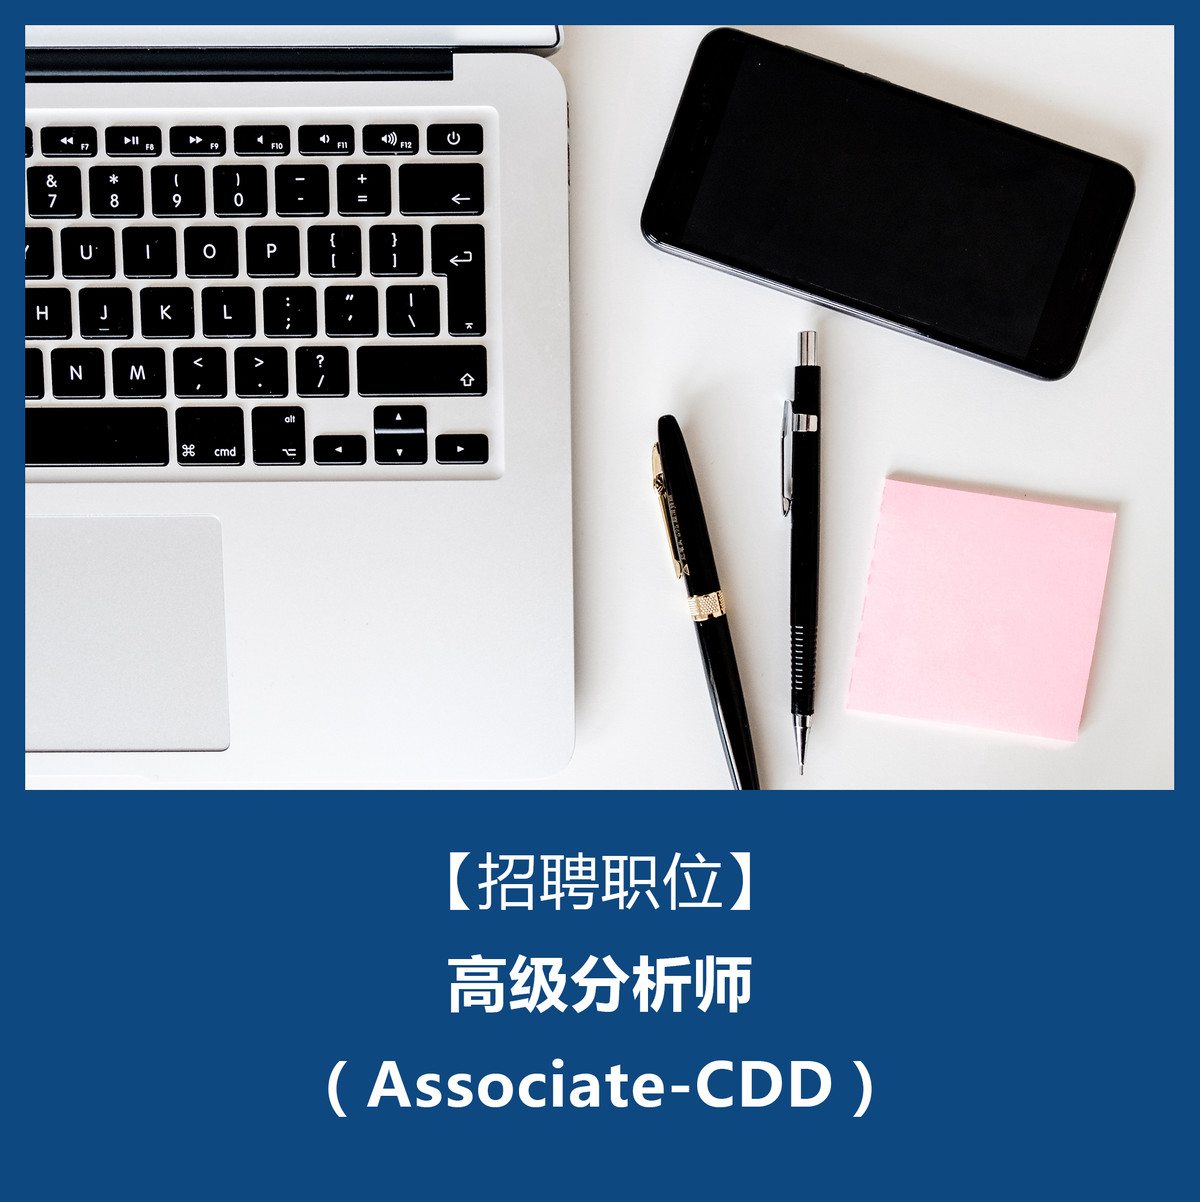 社会招聘-高级分析师 （Associate-CDD）